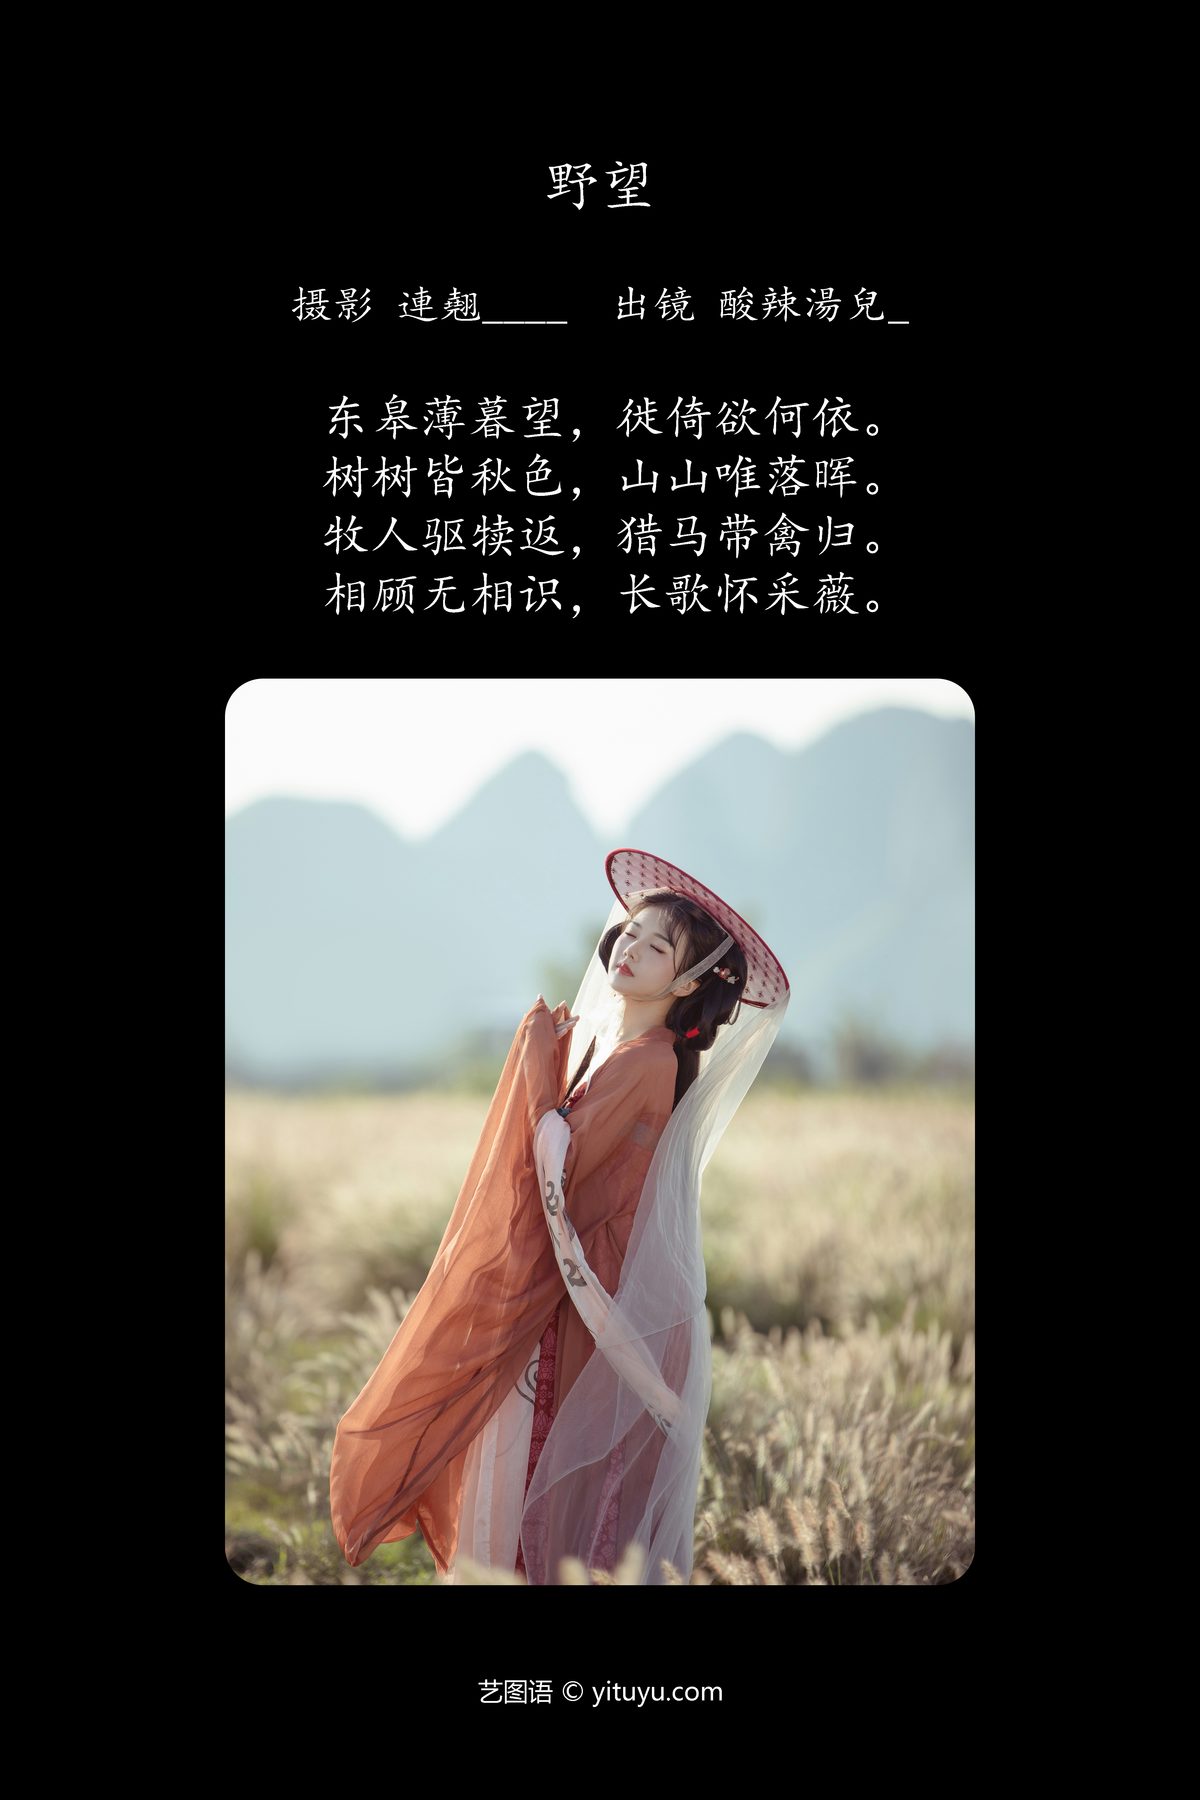 YiTuYu艺图语 Vol 5763 Suan La Tang Er 0002 2025845411.jpg